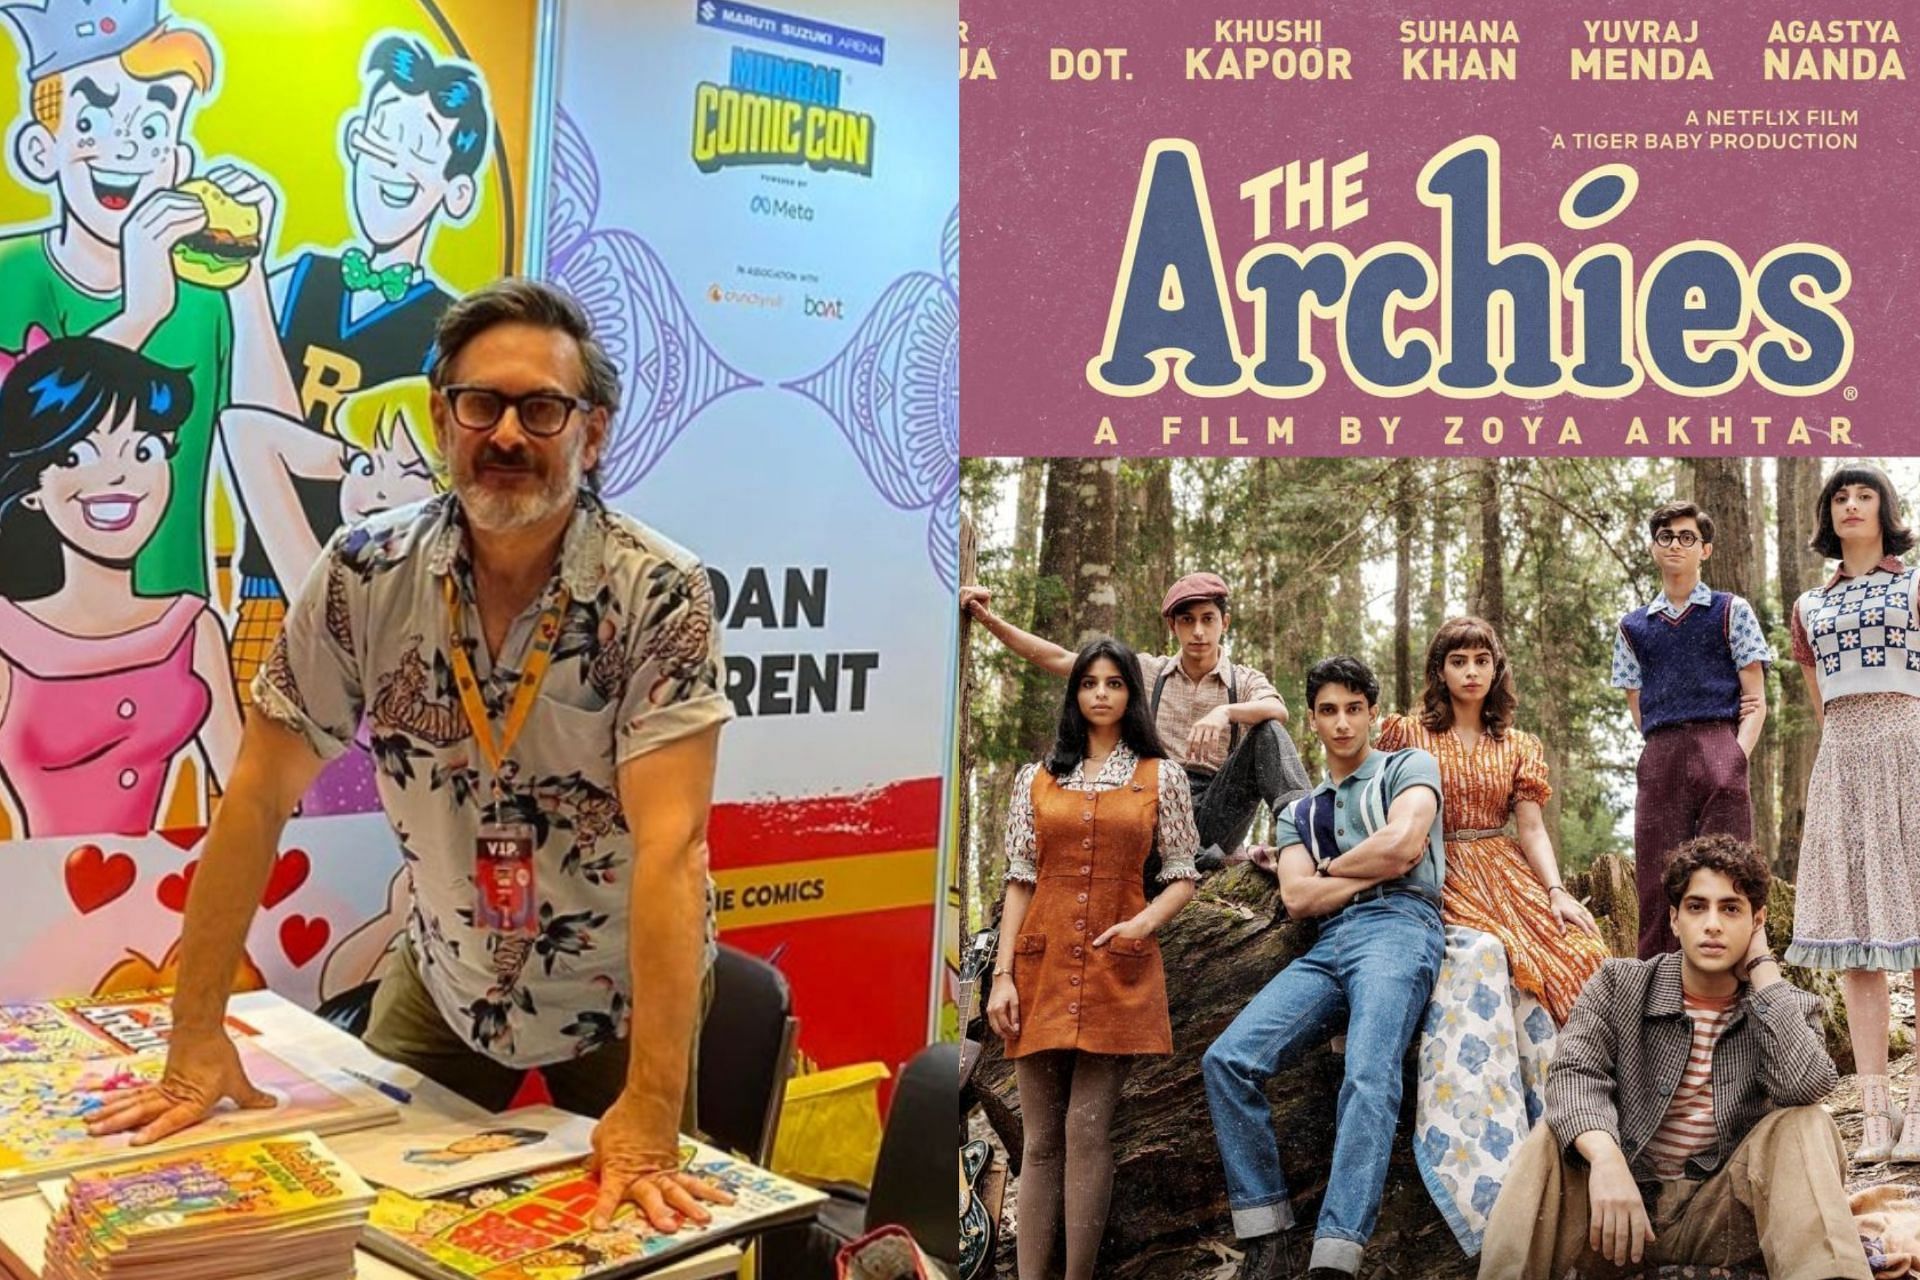 Archie comics book writer Dan Parent at Comic Con Mumbai 2023 (Image via Comic Con India)